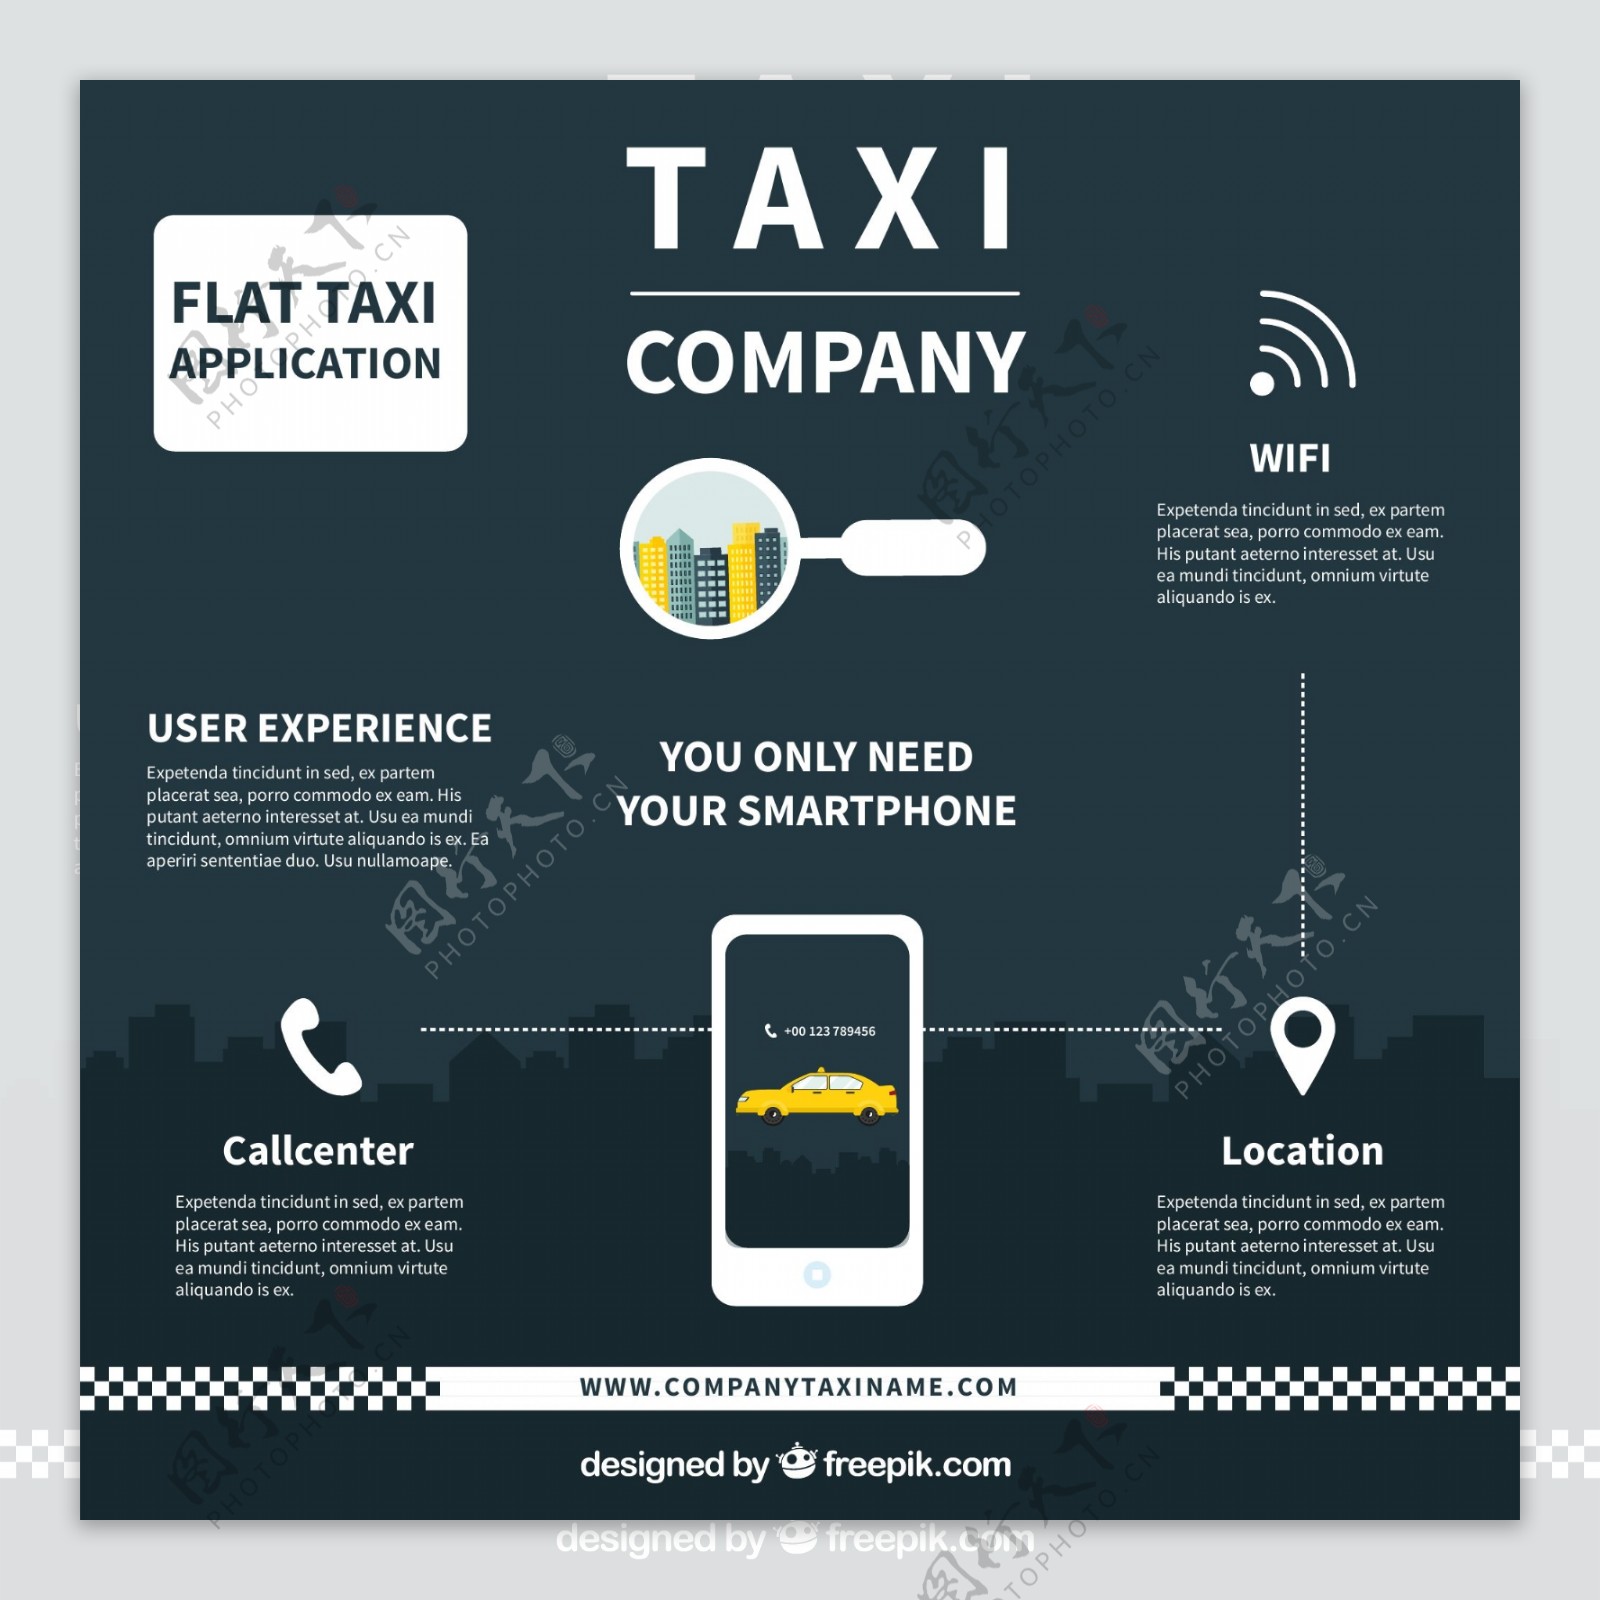 出租汽车服务申请的要素流程